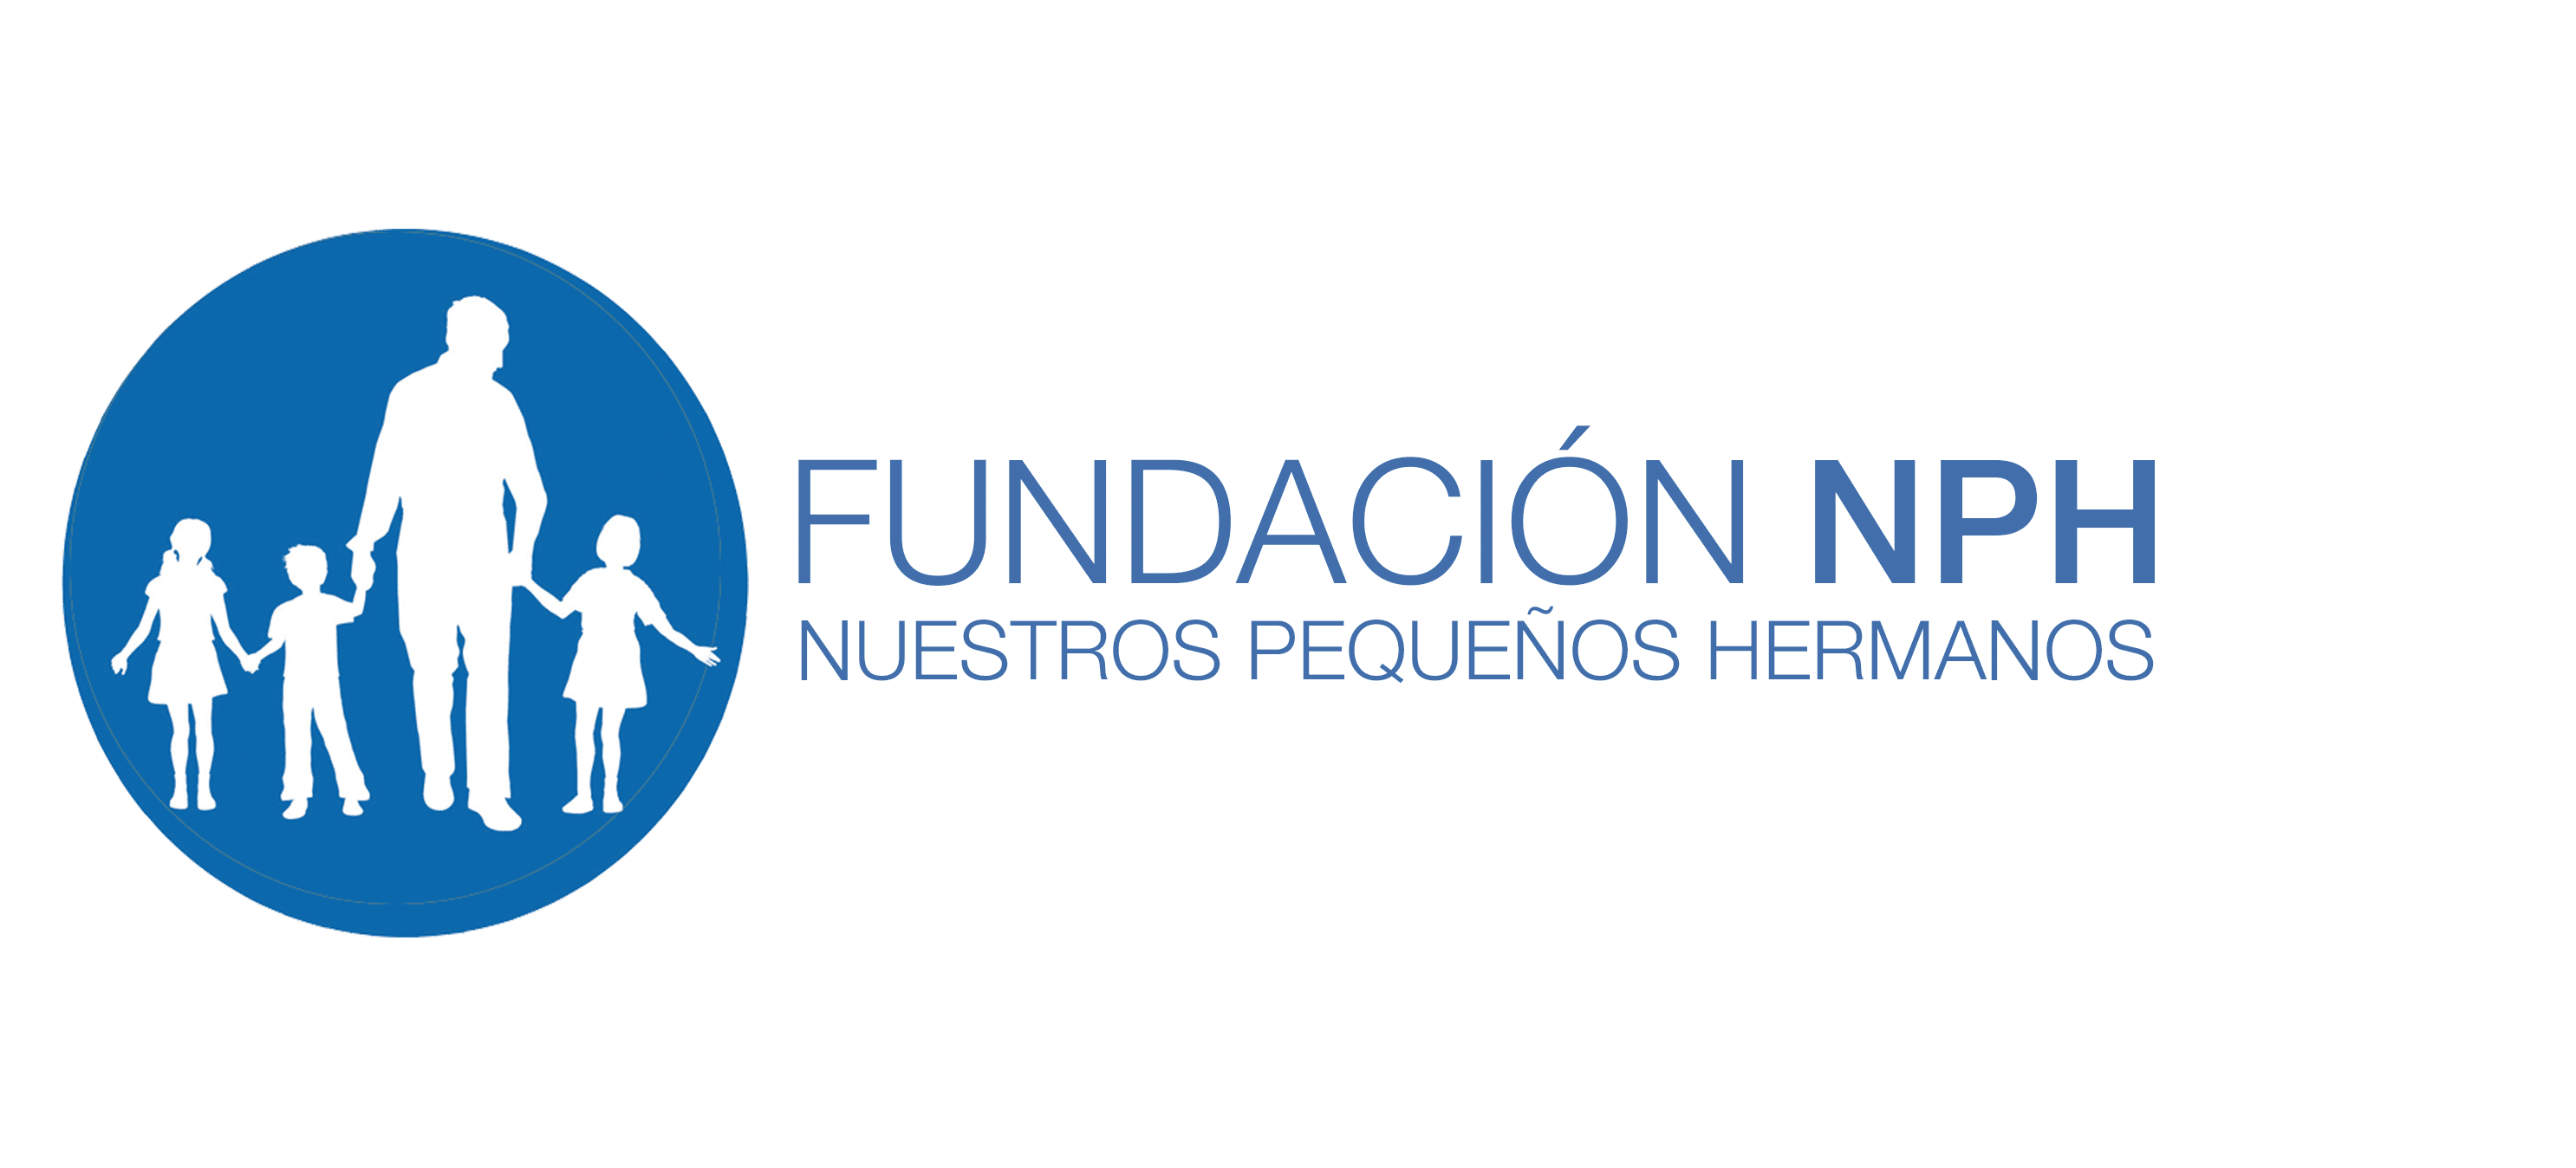 Fundación NPH